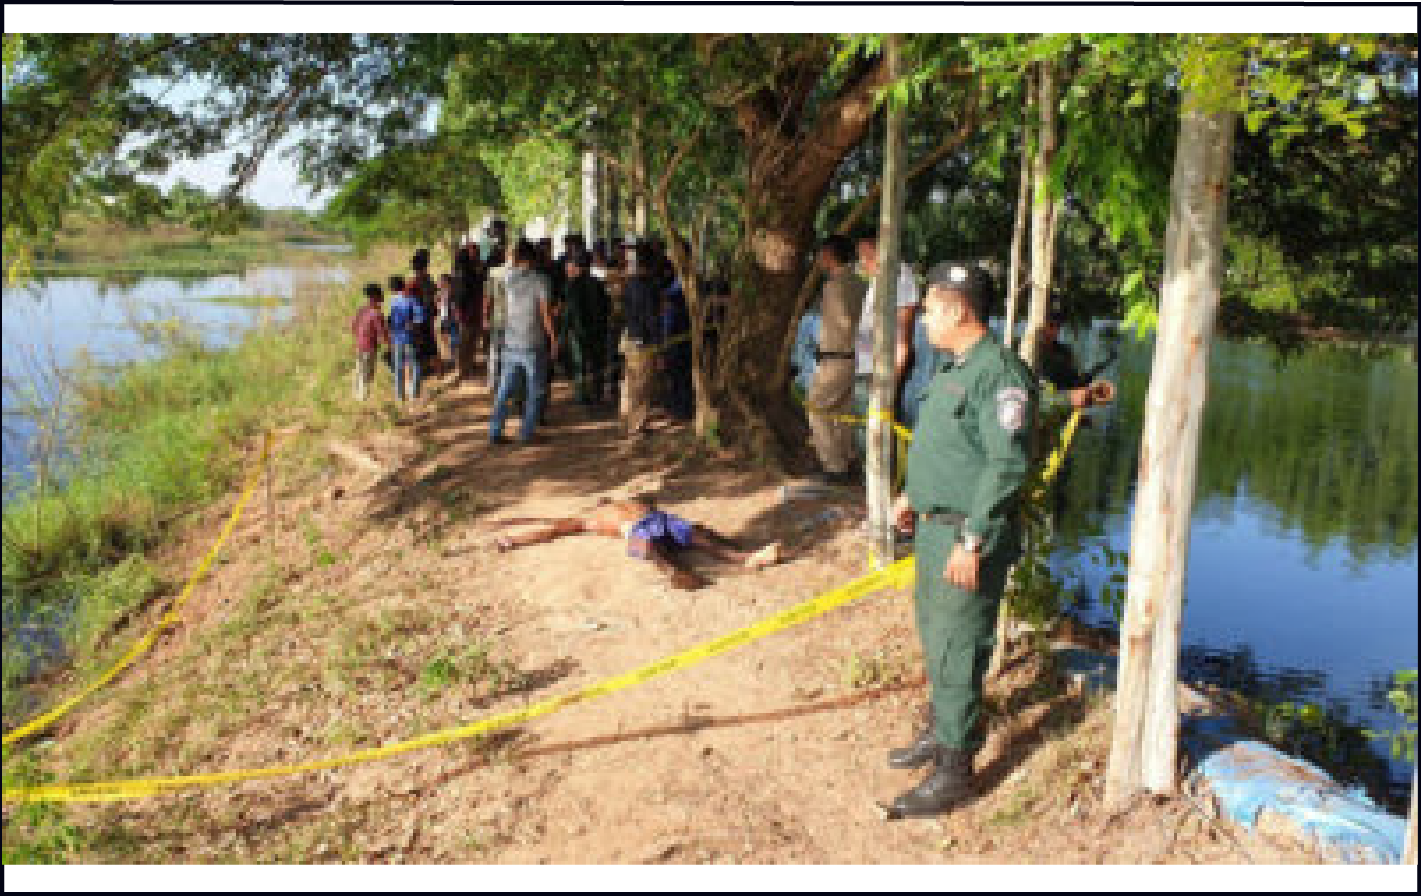 カンダール州 バナナを盗んだとして男が村人に殺されたー警察は私刑 リンチ 暴行致死事件として捜査ー 生活情報サイト スター カンボジア